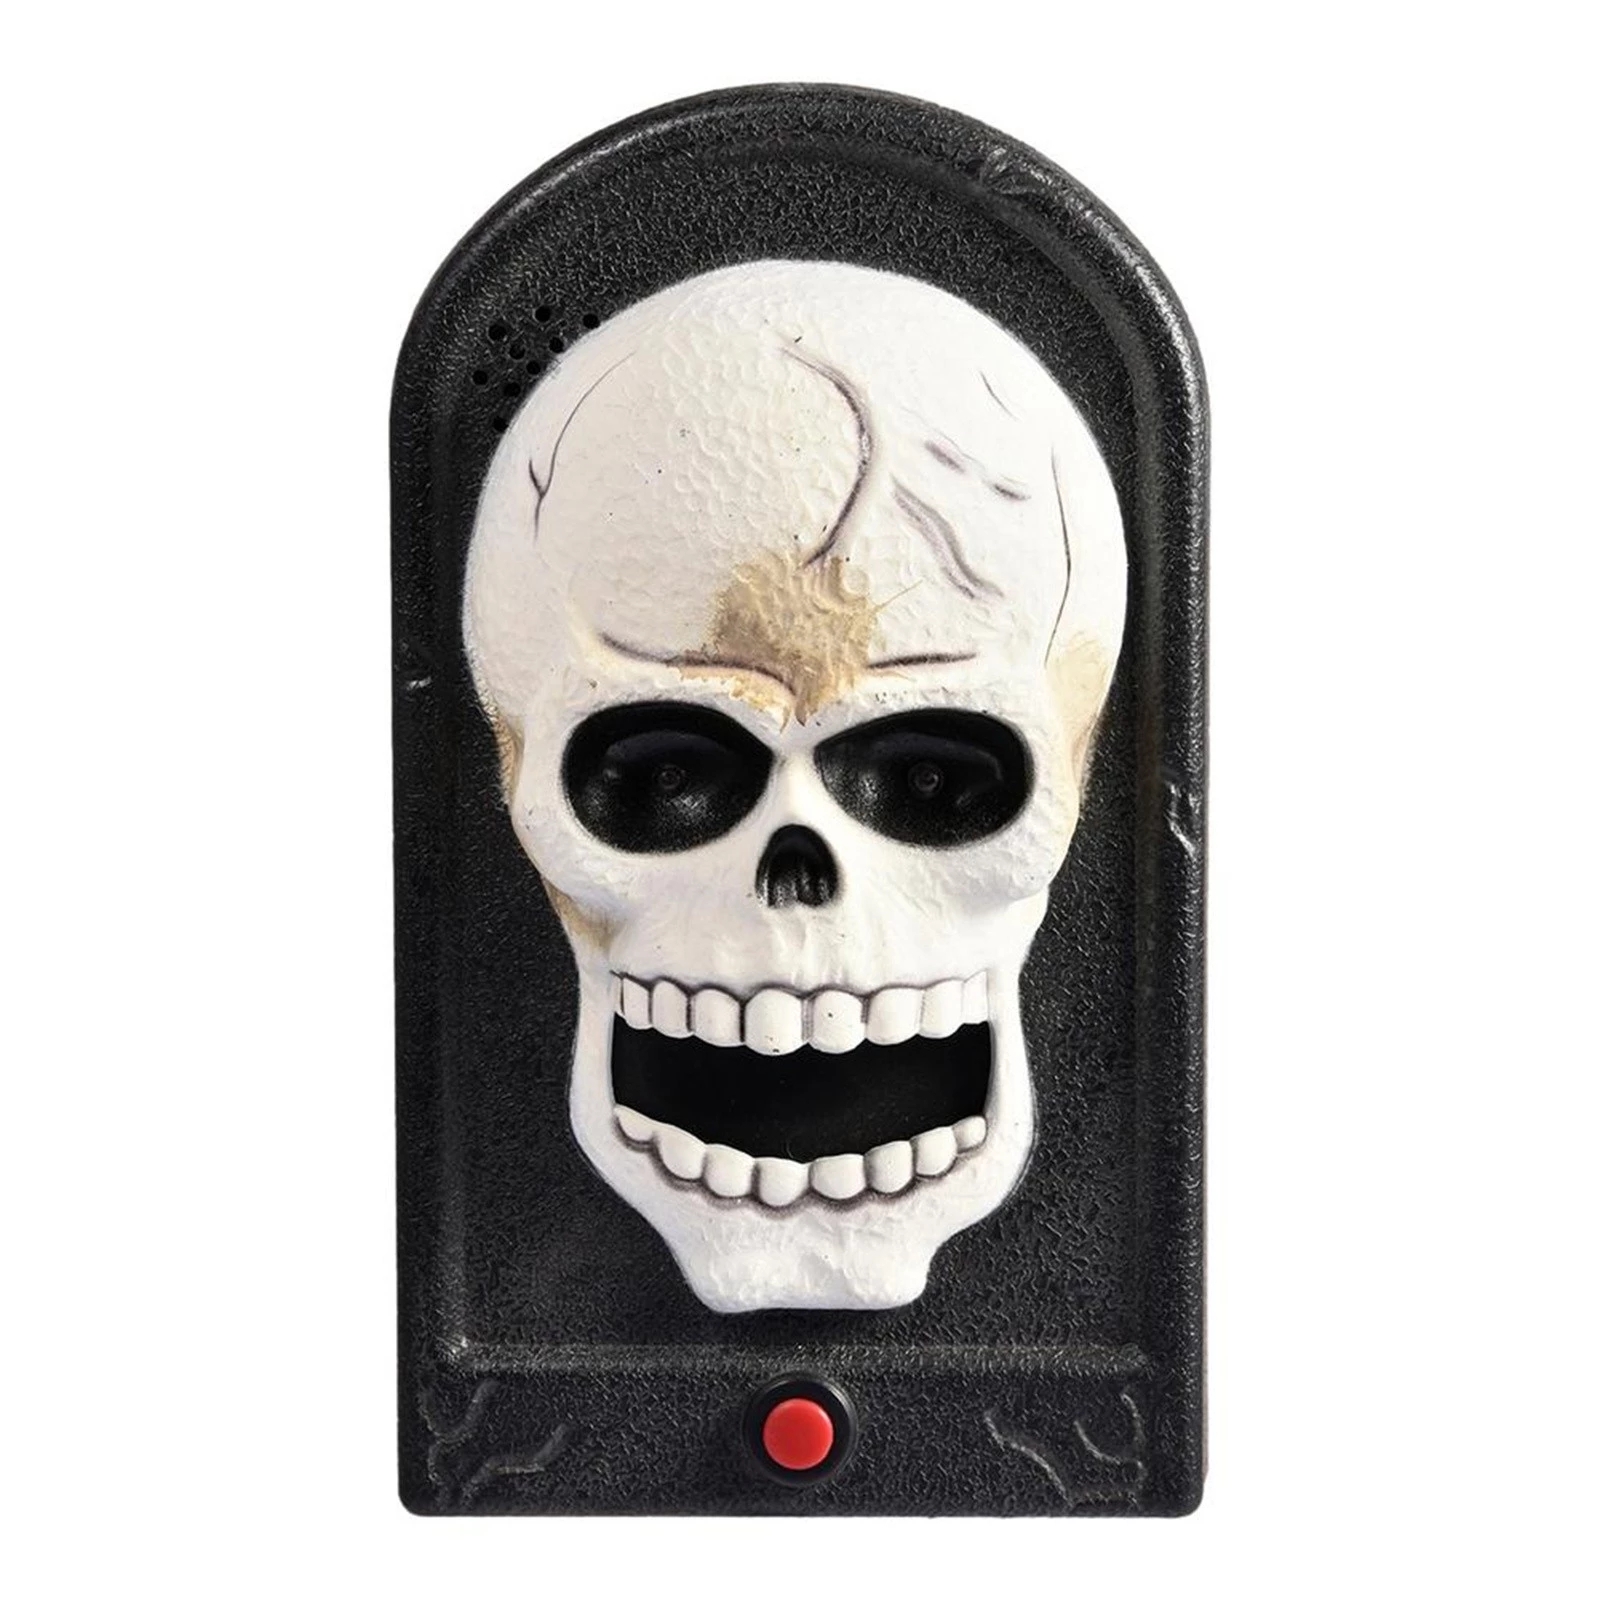 Halloween-Doorbell-Glowing-Sounding-Horror-Toy-Welcome-Door-Hanging-Skull-Decora-Horror-Props-Glowin-1907298-12